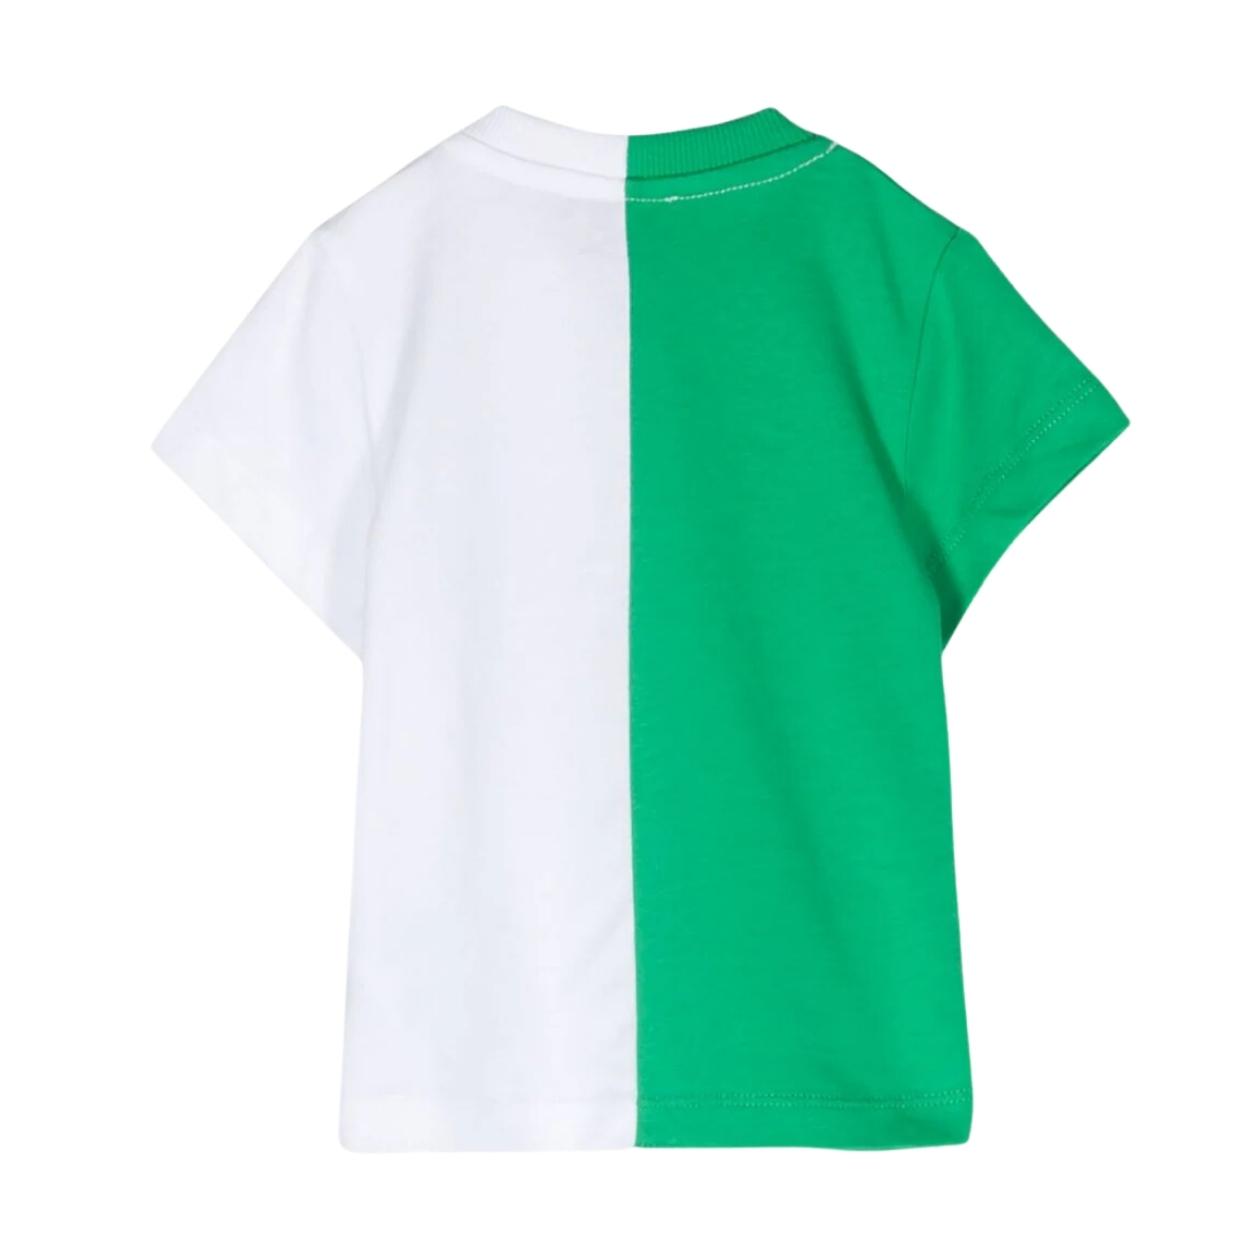 Moschino Baby Half Graphic Logo Green/White T-Shirt